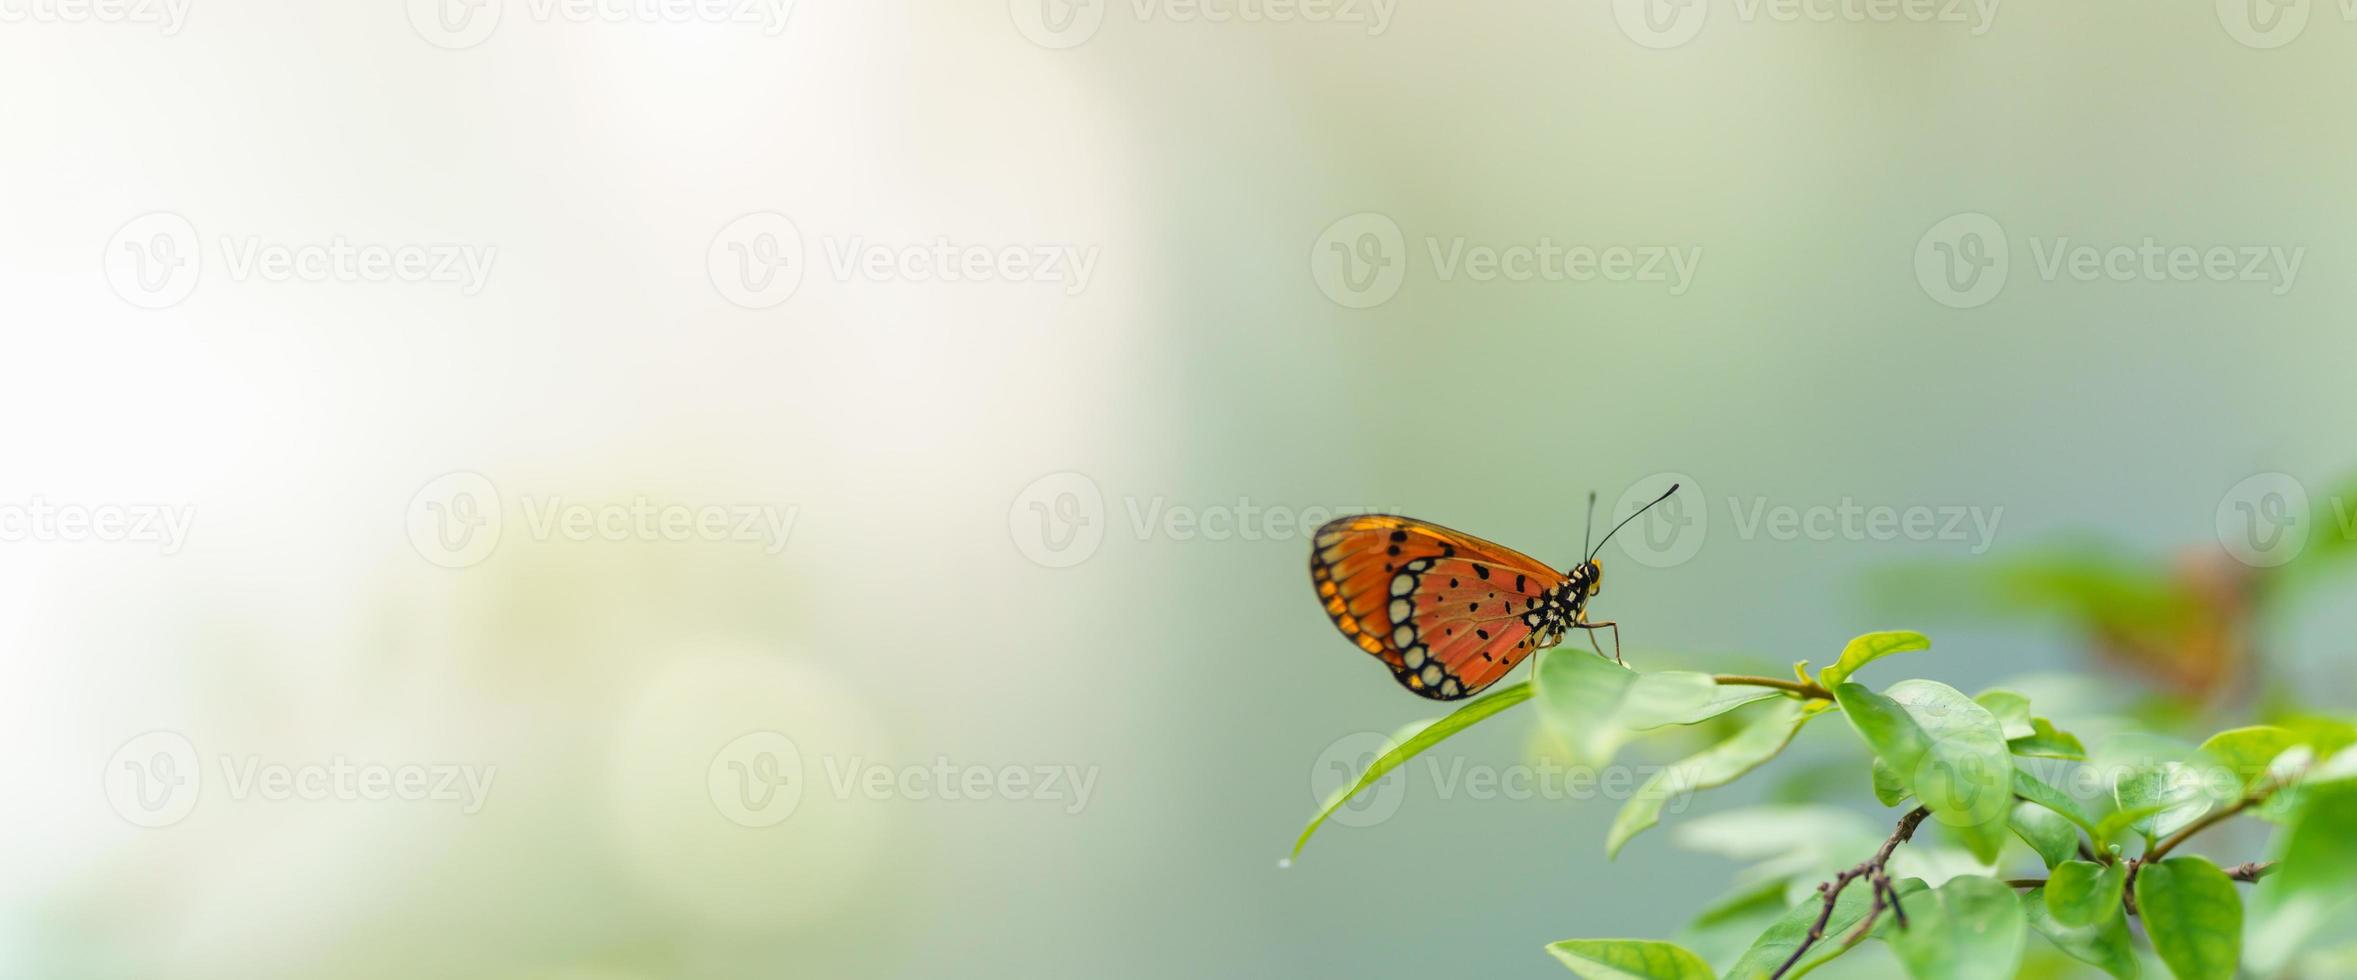 visão da natureza da linda borboleta laranja na natureza da folha verde fundo desfocado no jardim com espaço de cópia usando como inseto de fundo, paisagem natural, ecologia, conceito de capa fresca. foto